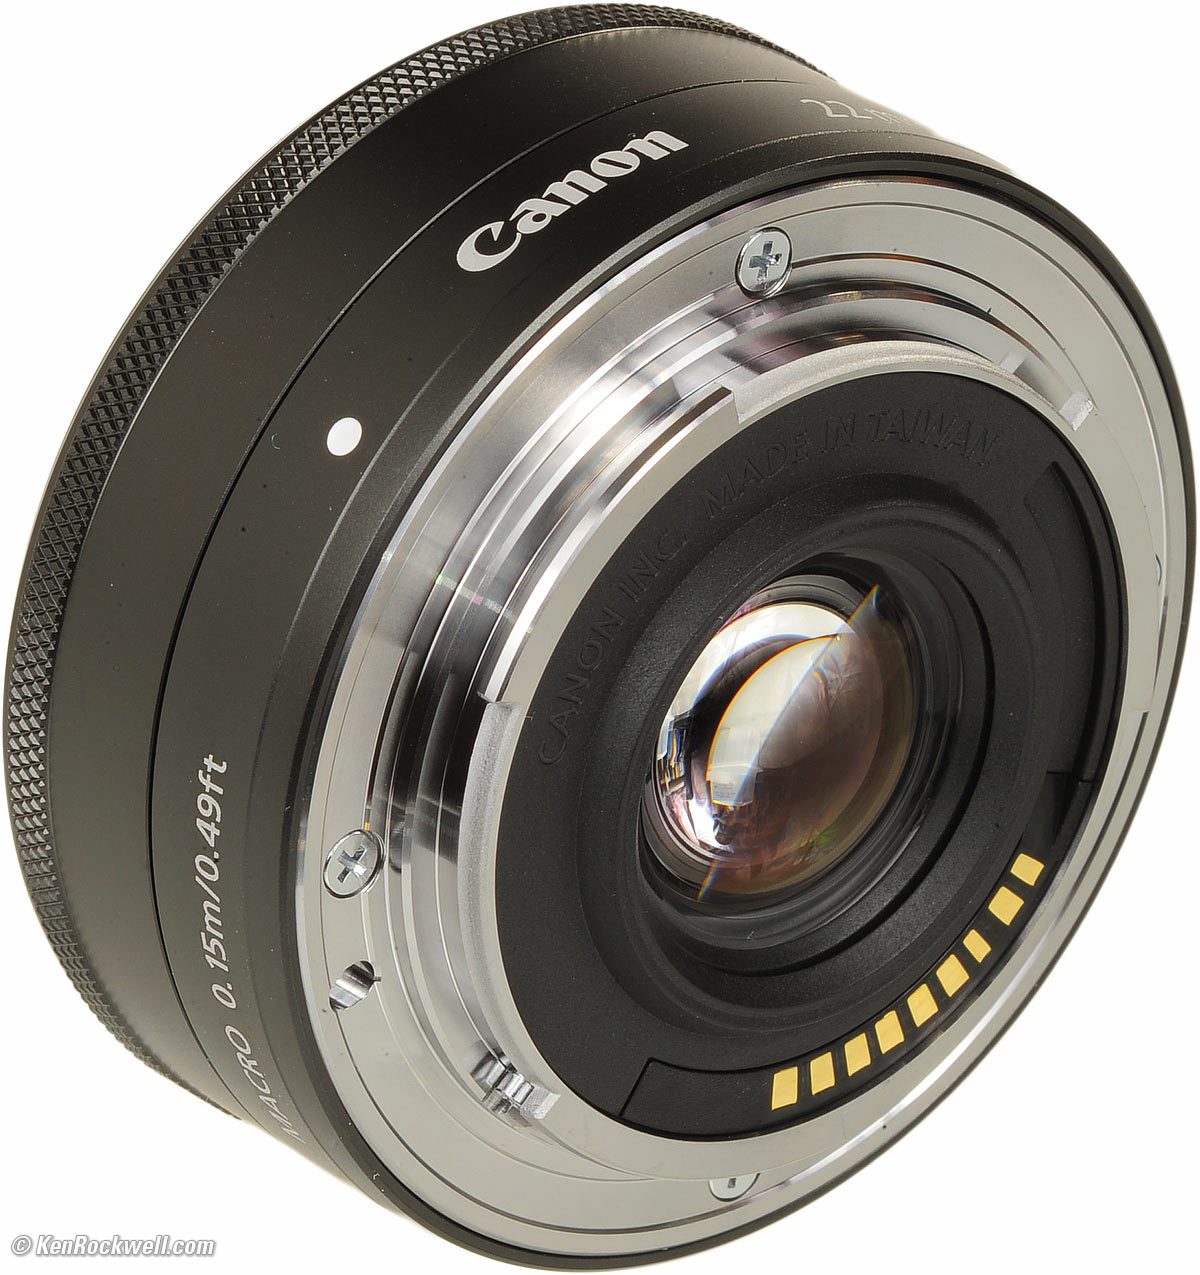 カメラ デジタルカメラ Canon 22mm f/2 STM Review